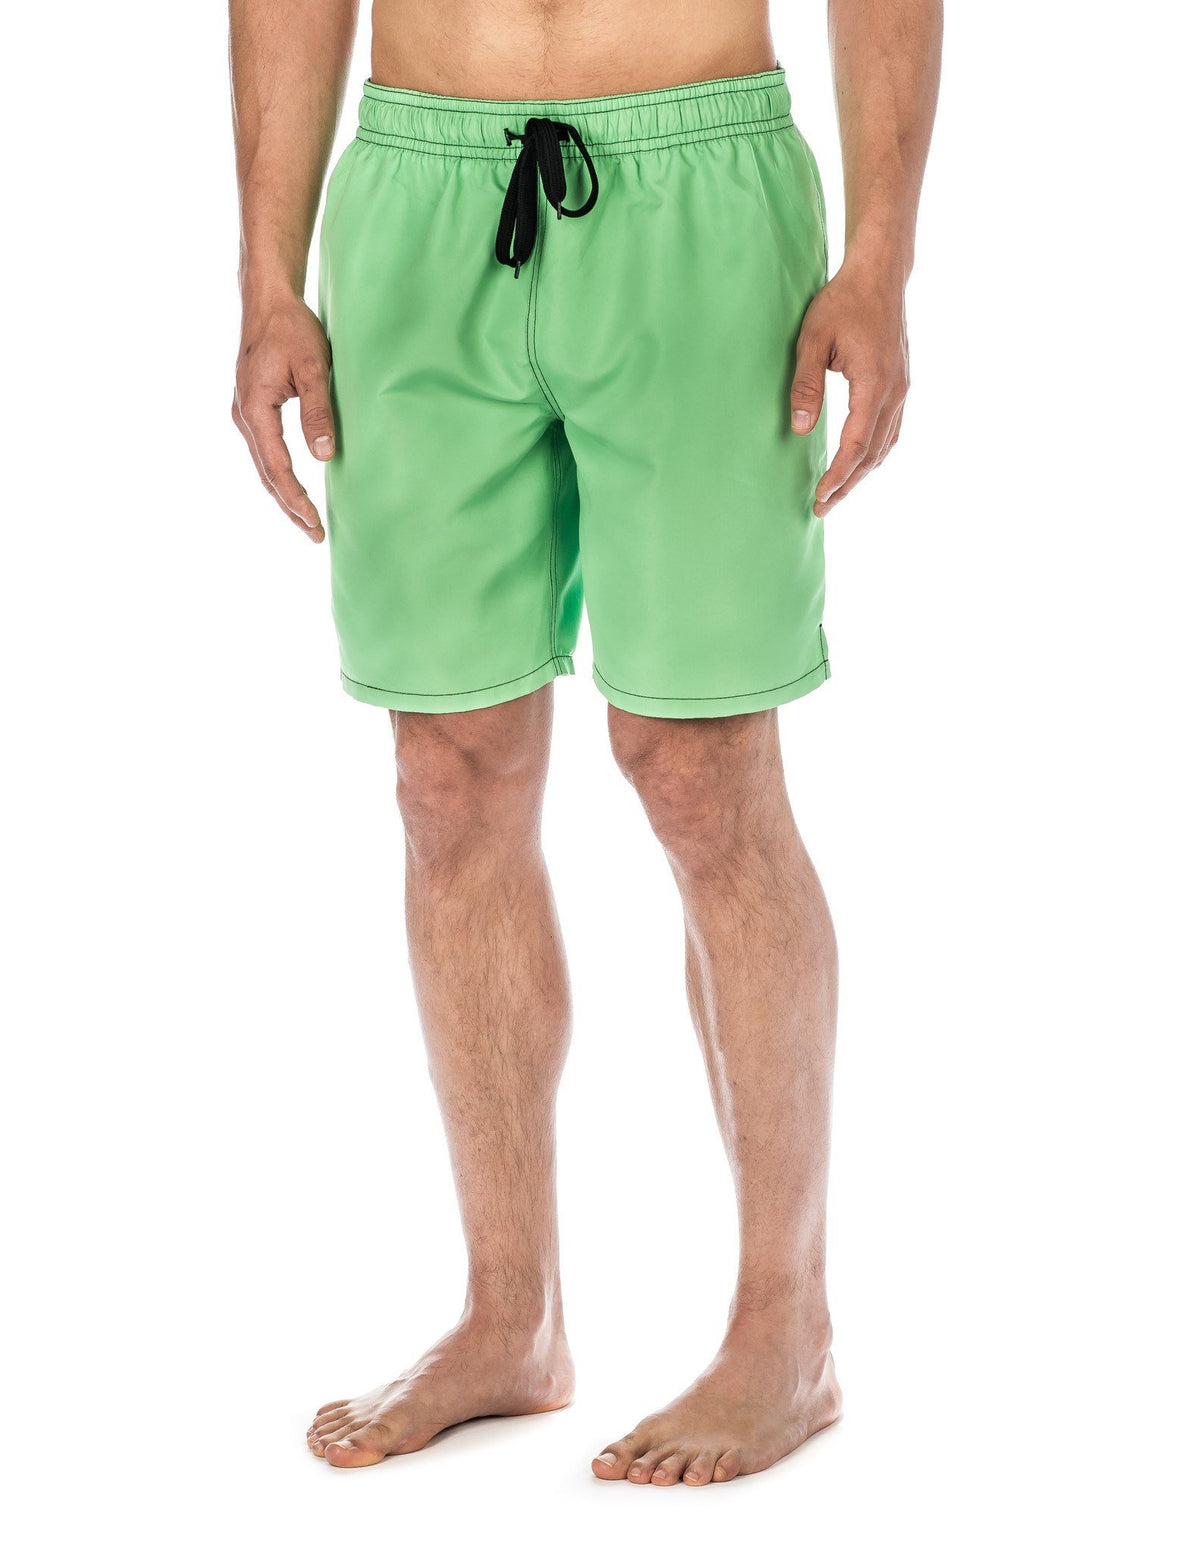 Men's Premium Swim Trunks - Green/Black